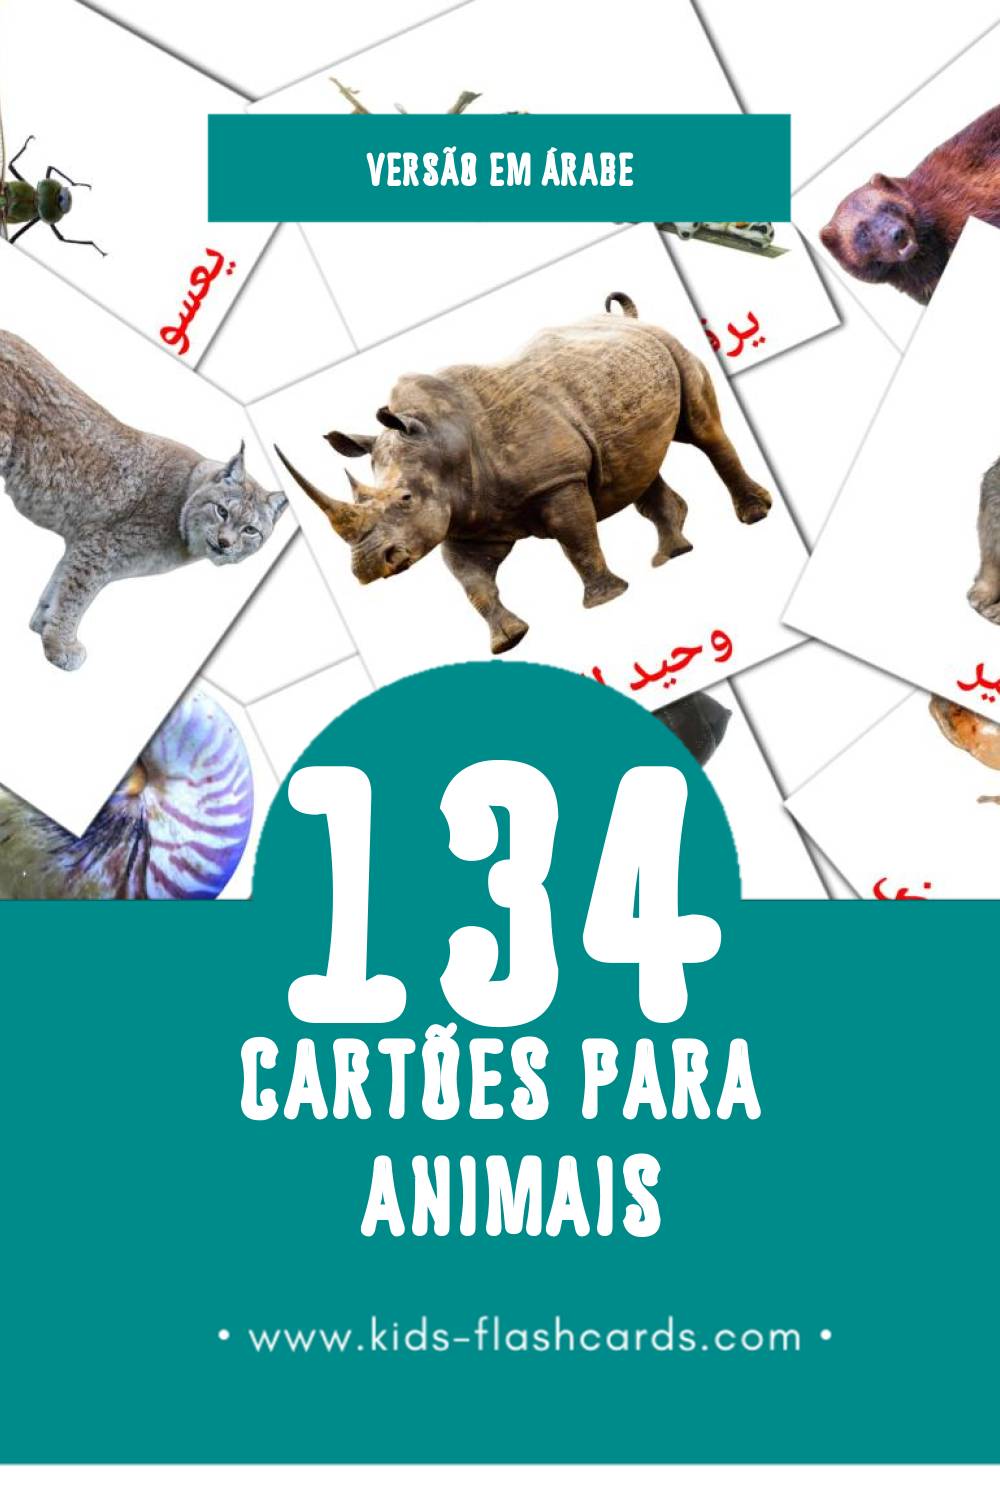 Flashcards de حيوانات برية Visuais para Toddlers (134 cartões em Árabe)